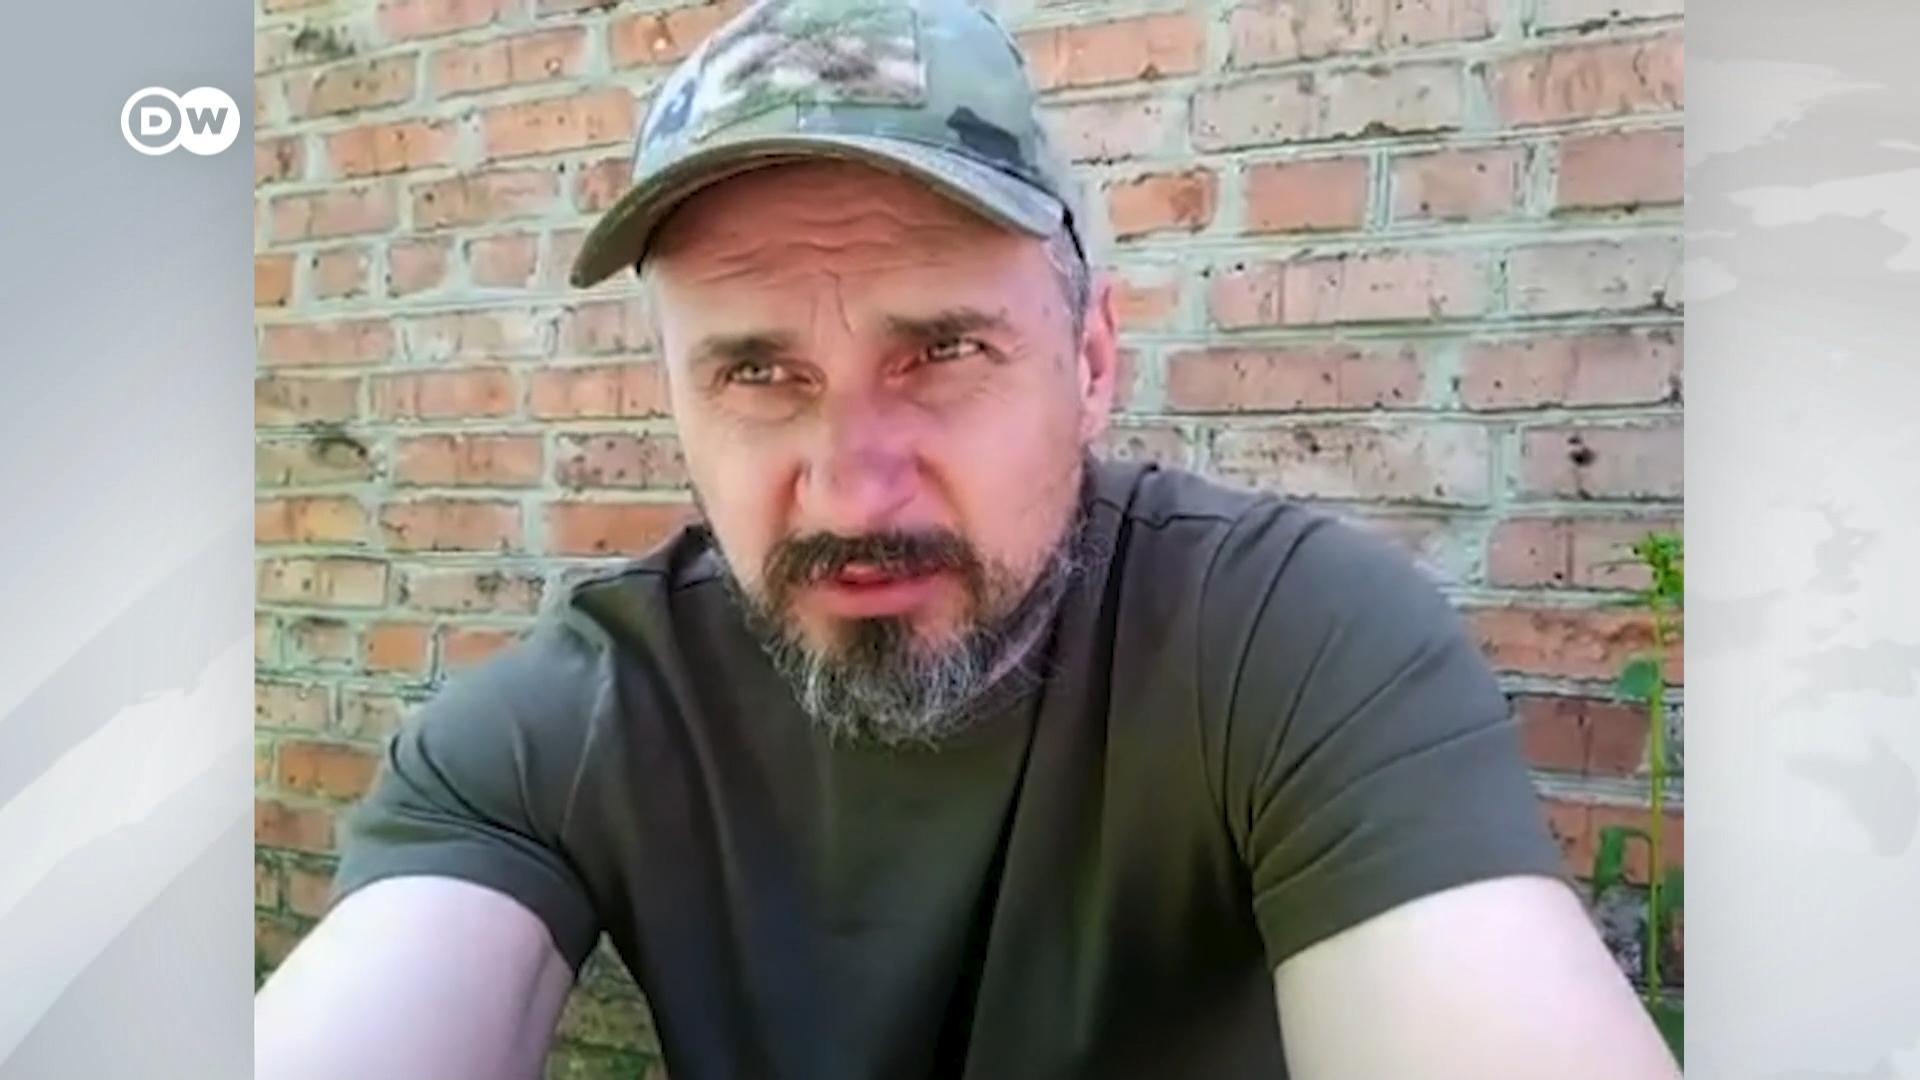 Олег Сенцов воює на фронті поблизу Сєверодонецька. Він розповів DW, чи боїться полону РФ і коли обміняють азовців.